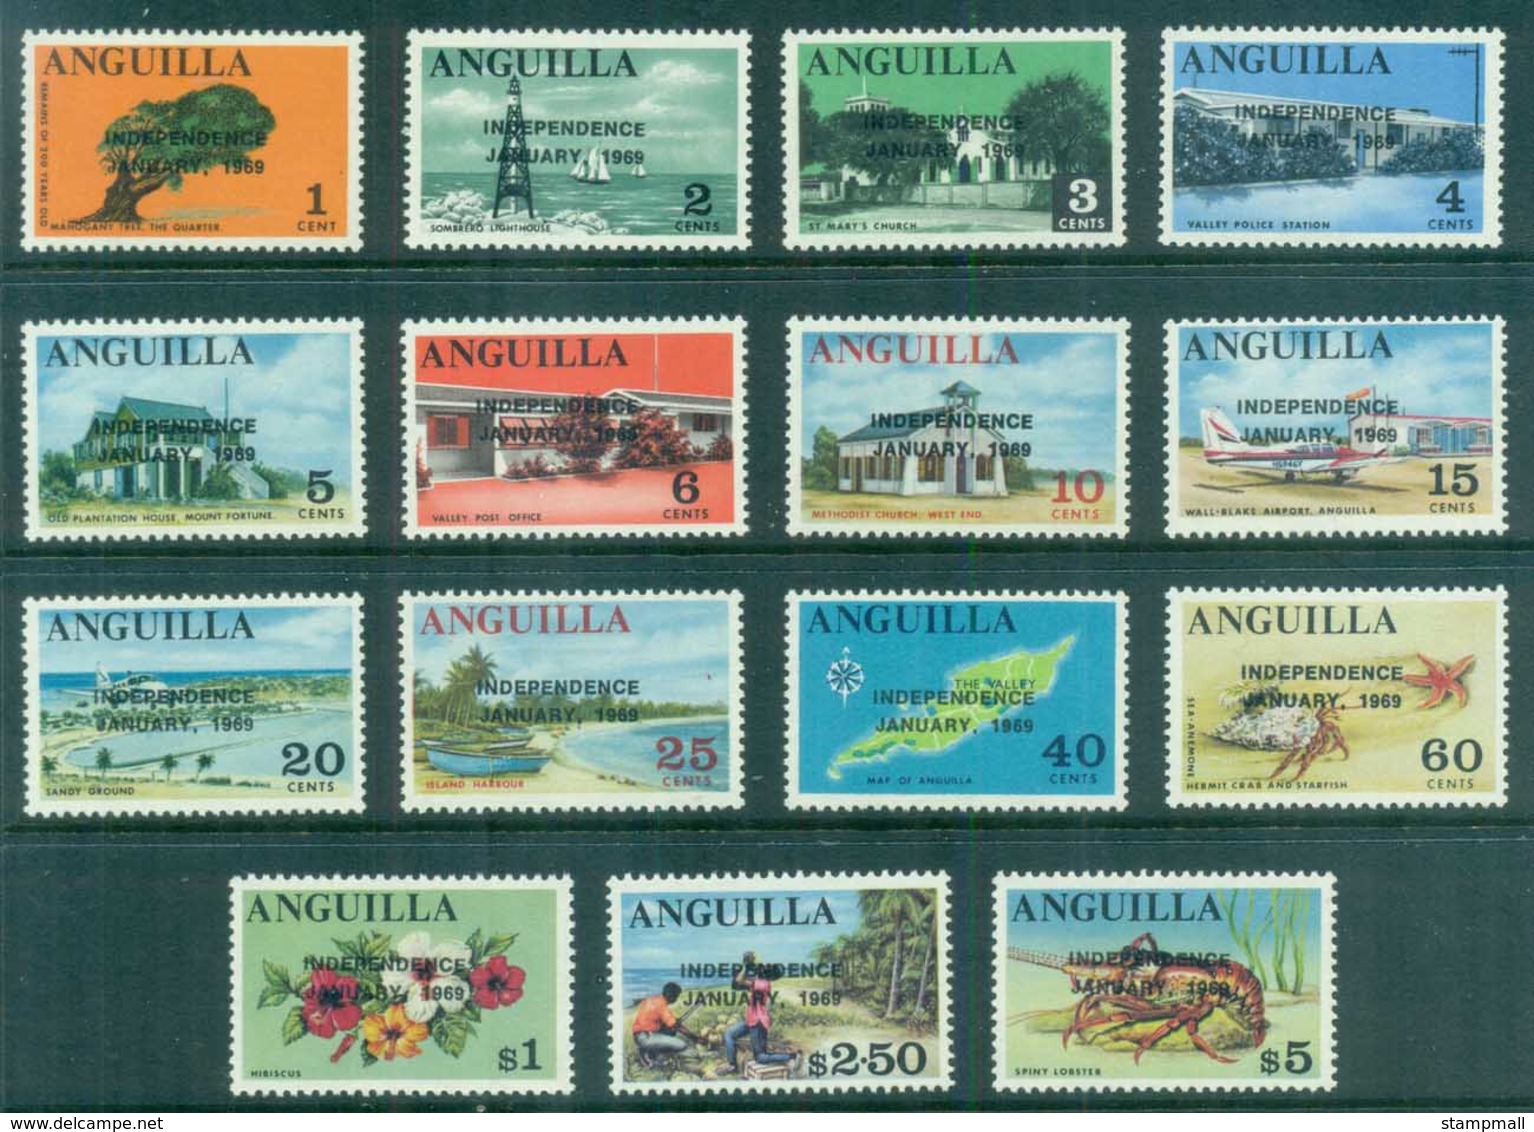 Anguilla 1969 Pictorials Opt Independence MUH - Anguilla (1968-...)